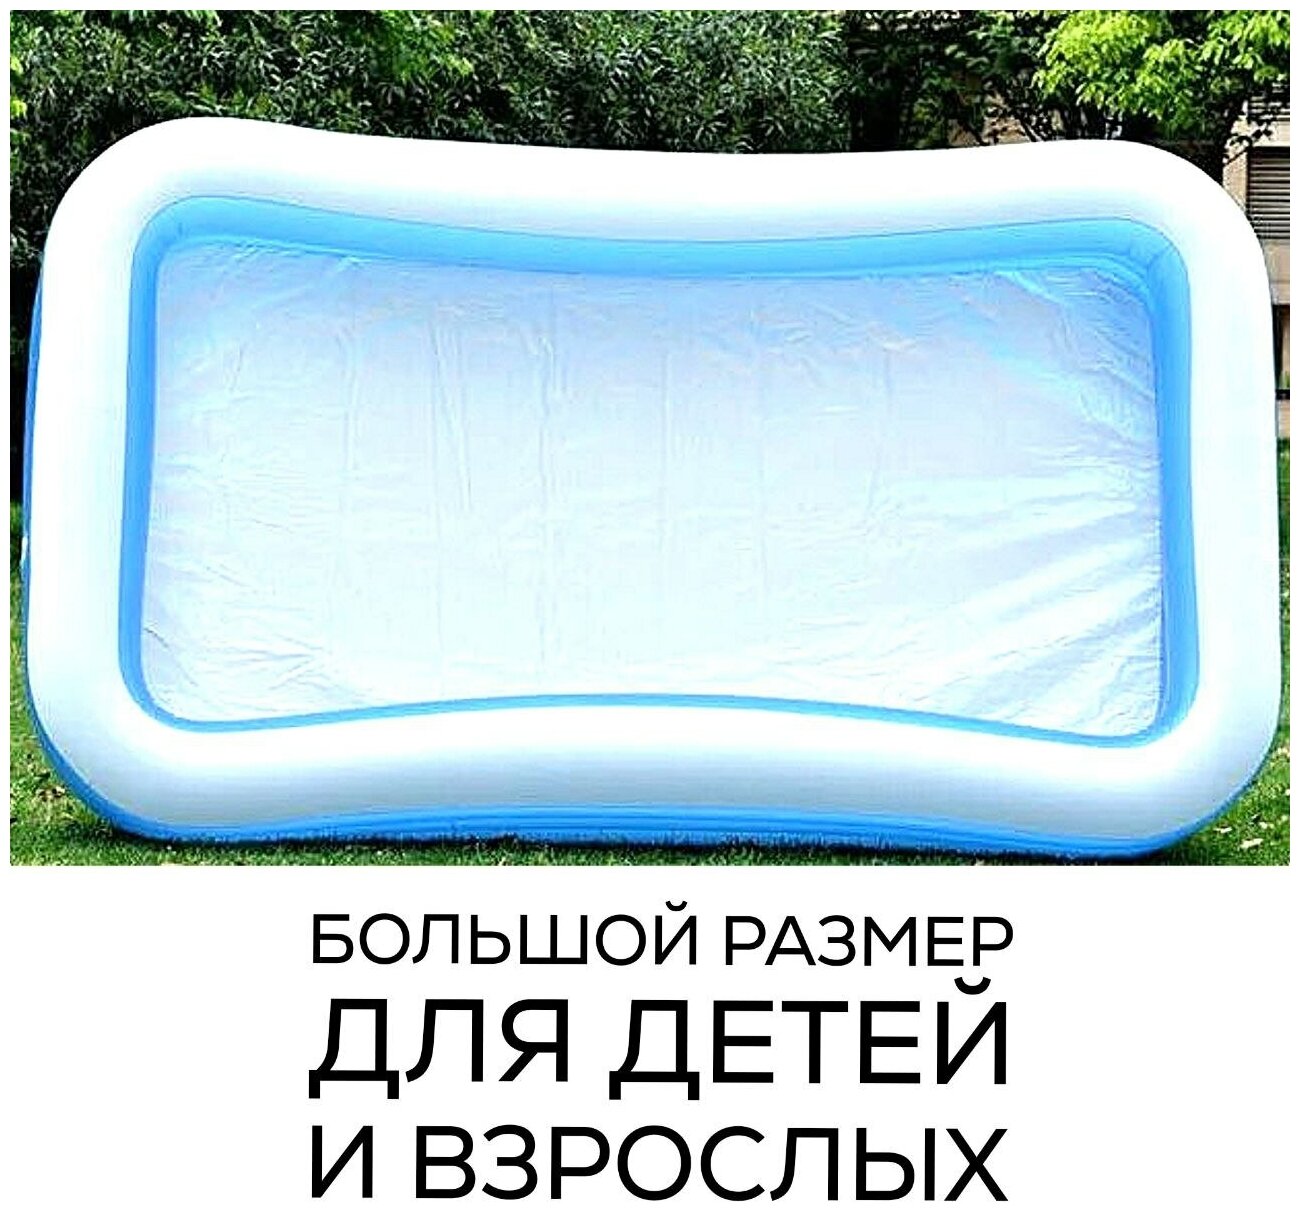 Детский надувной бассейн, бассейн прямоугольный семейный 262х175х56 см., объём 770 л., бассейн для всей семьи, Intex - фотография № 5